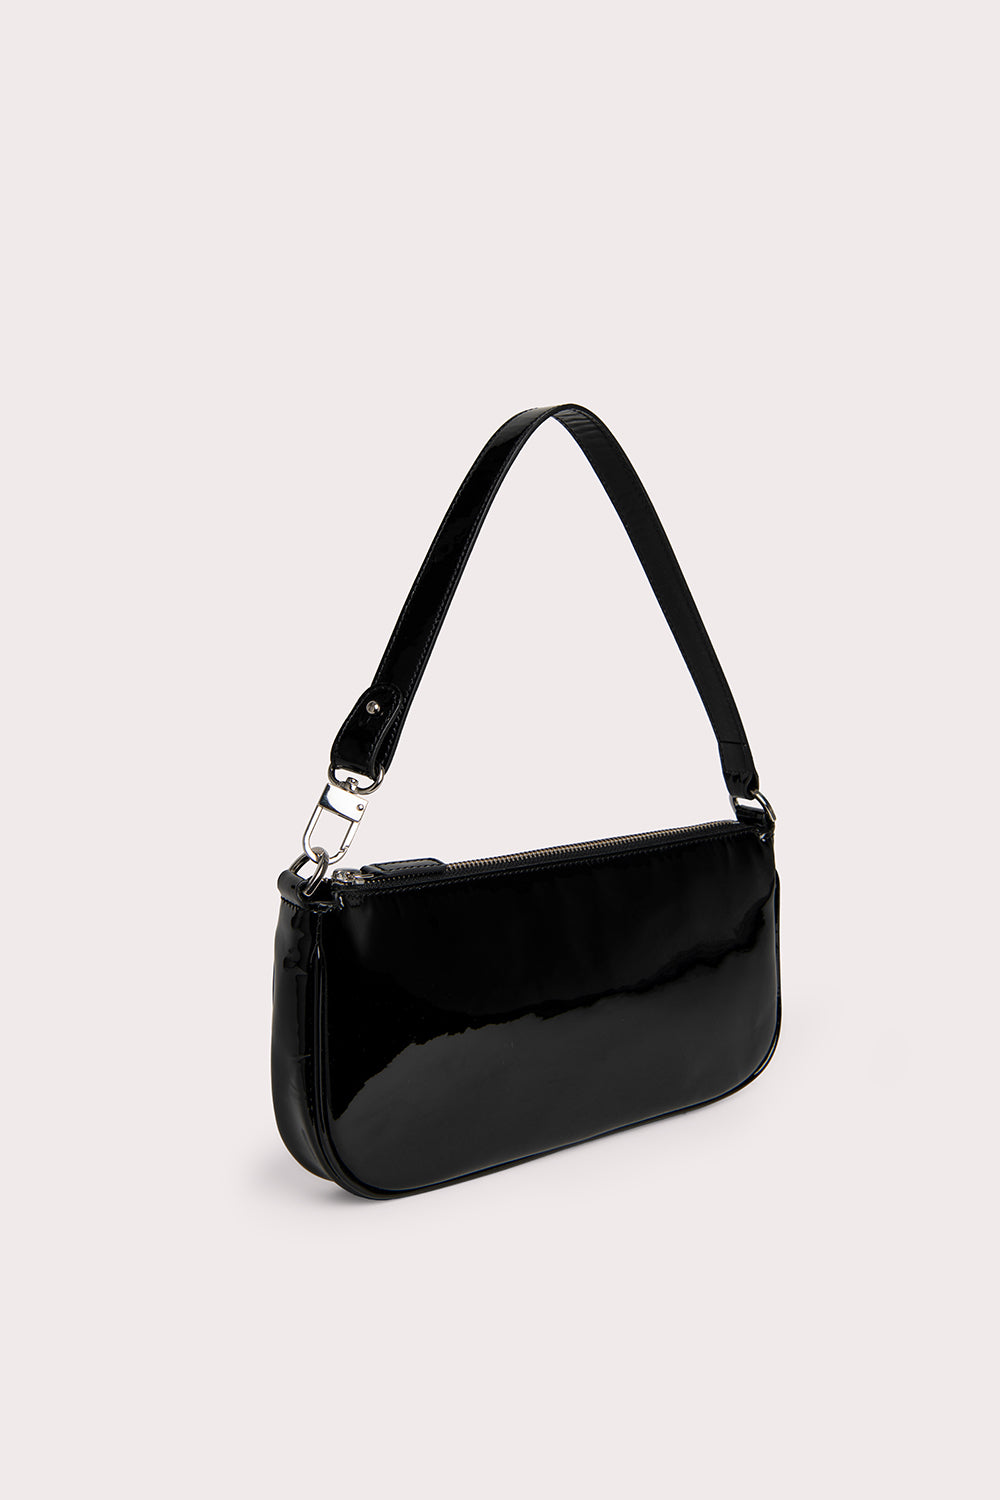 Gucci Horsebit Handbag Shoulder Bag 2WAY 371925 Black Patent Leather –  Timeless Vintage